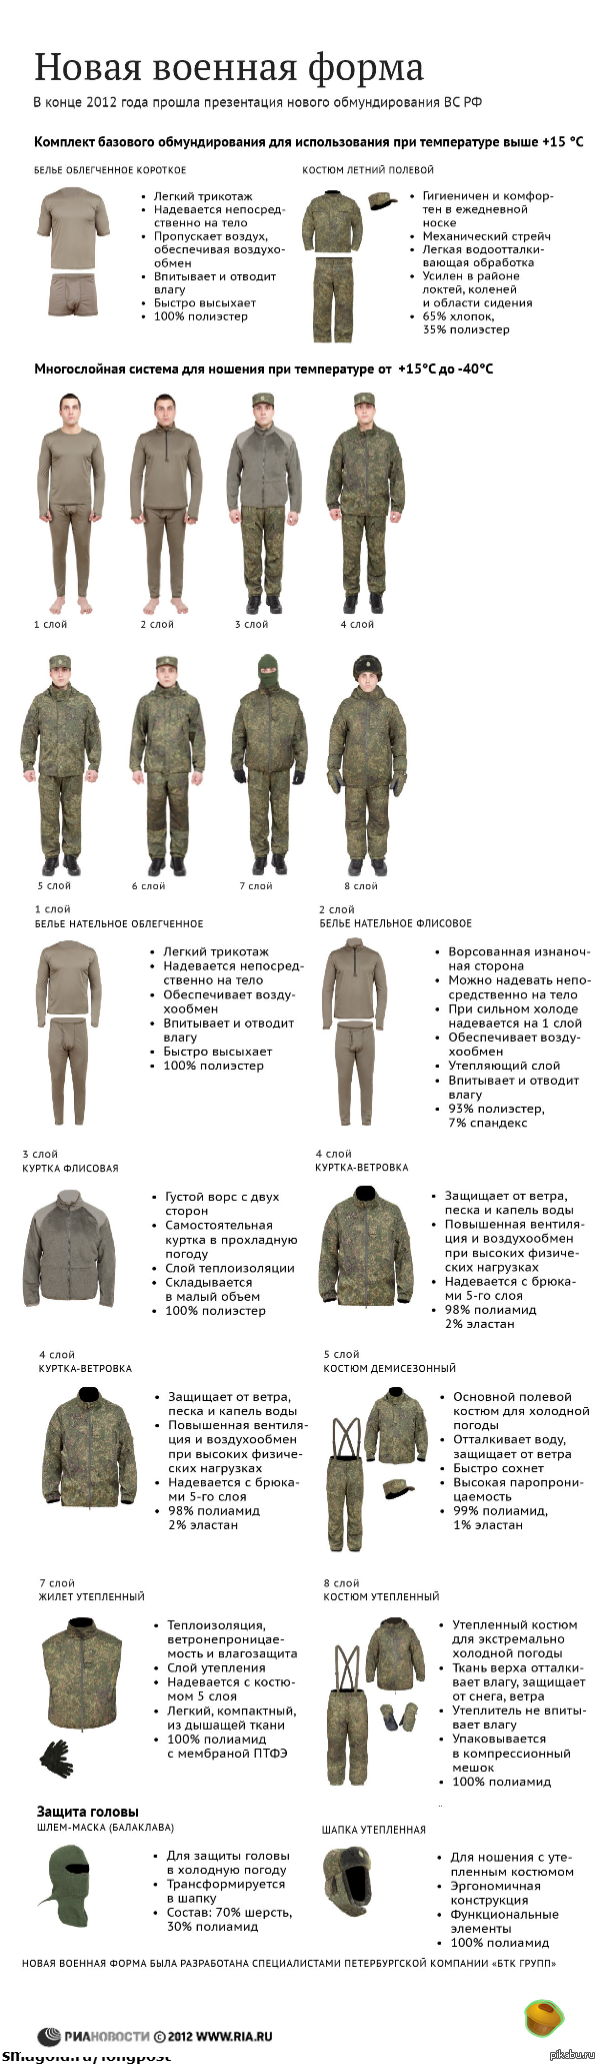 Приказ по форме одежды военнослужащих